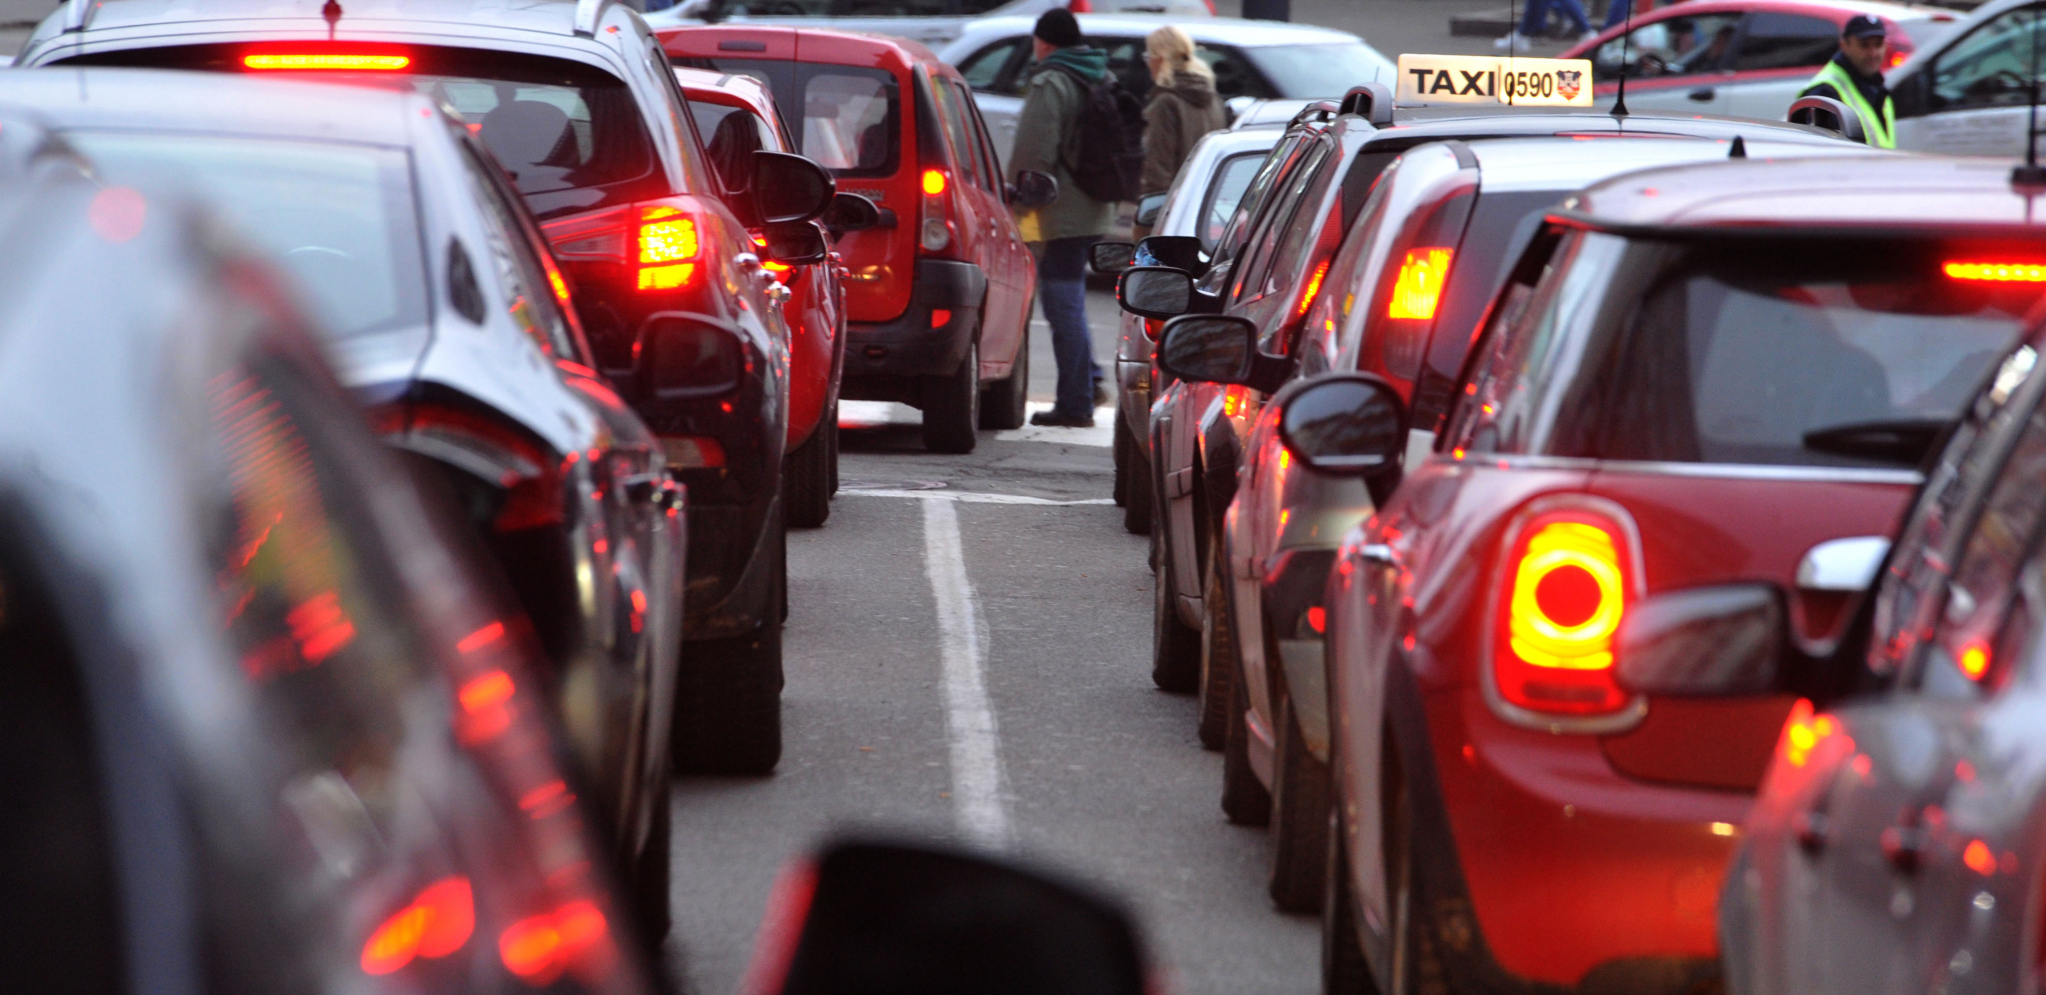 KAD BI SVAKO POVEZAO KOMŠIJU VOZILA BI BILO MANJE Postoje dva predloga za smanjenje saobraćajnih gužvi u glavnom gradu